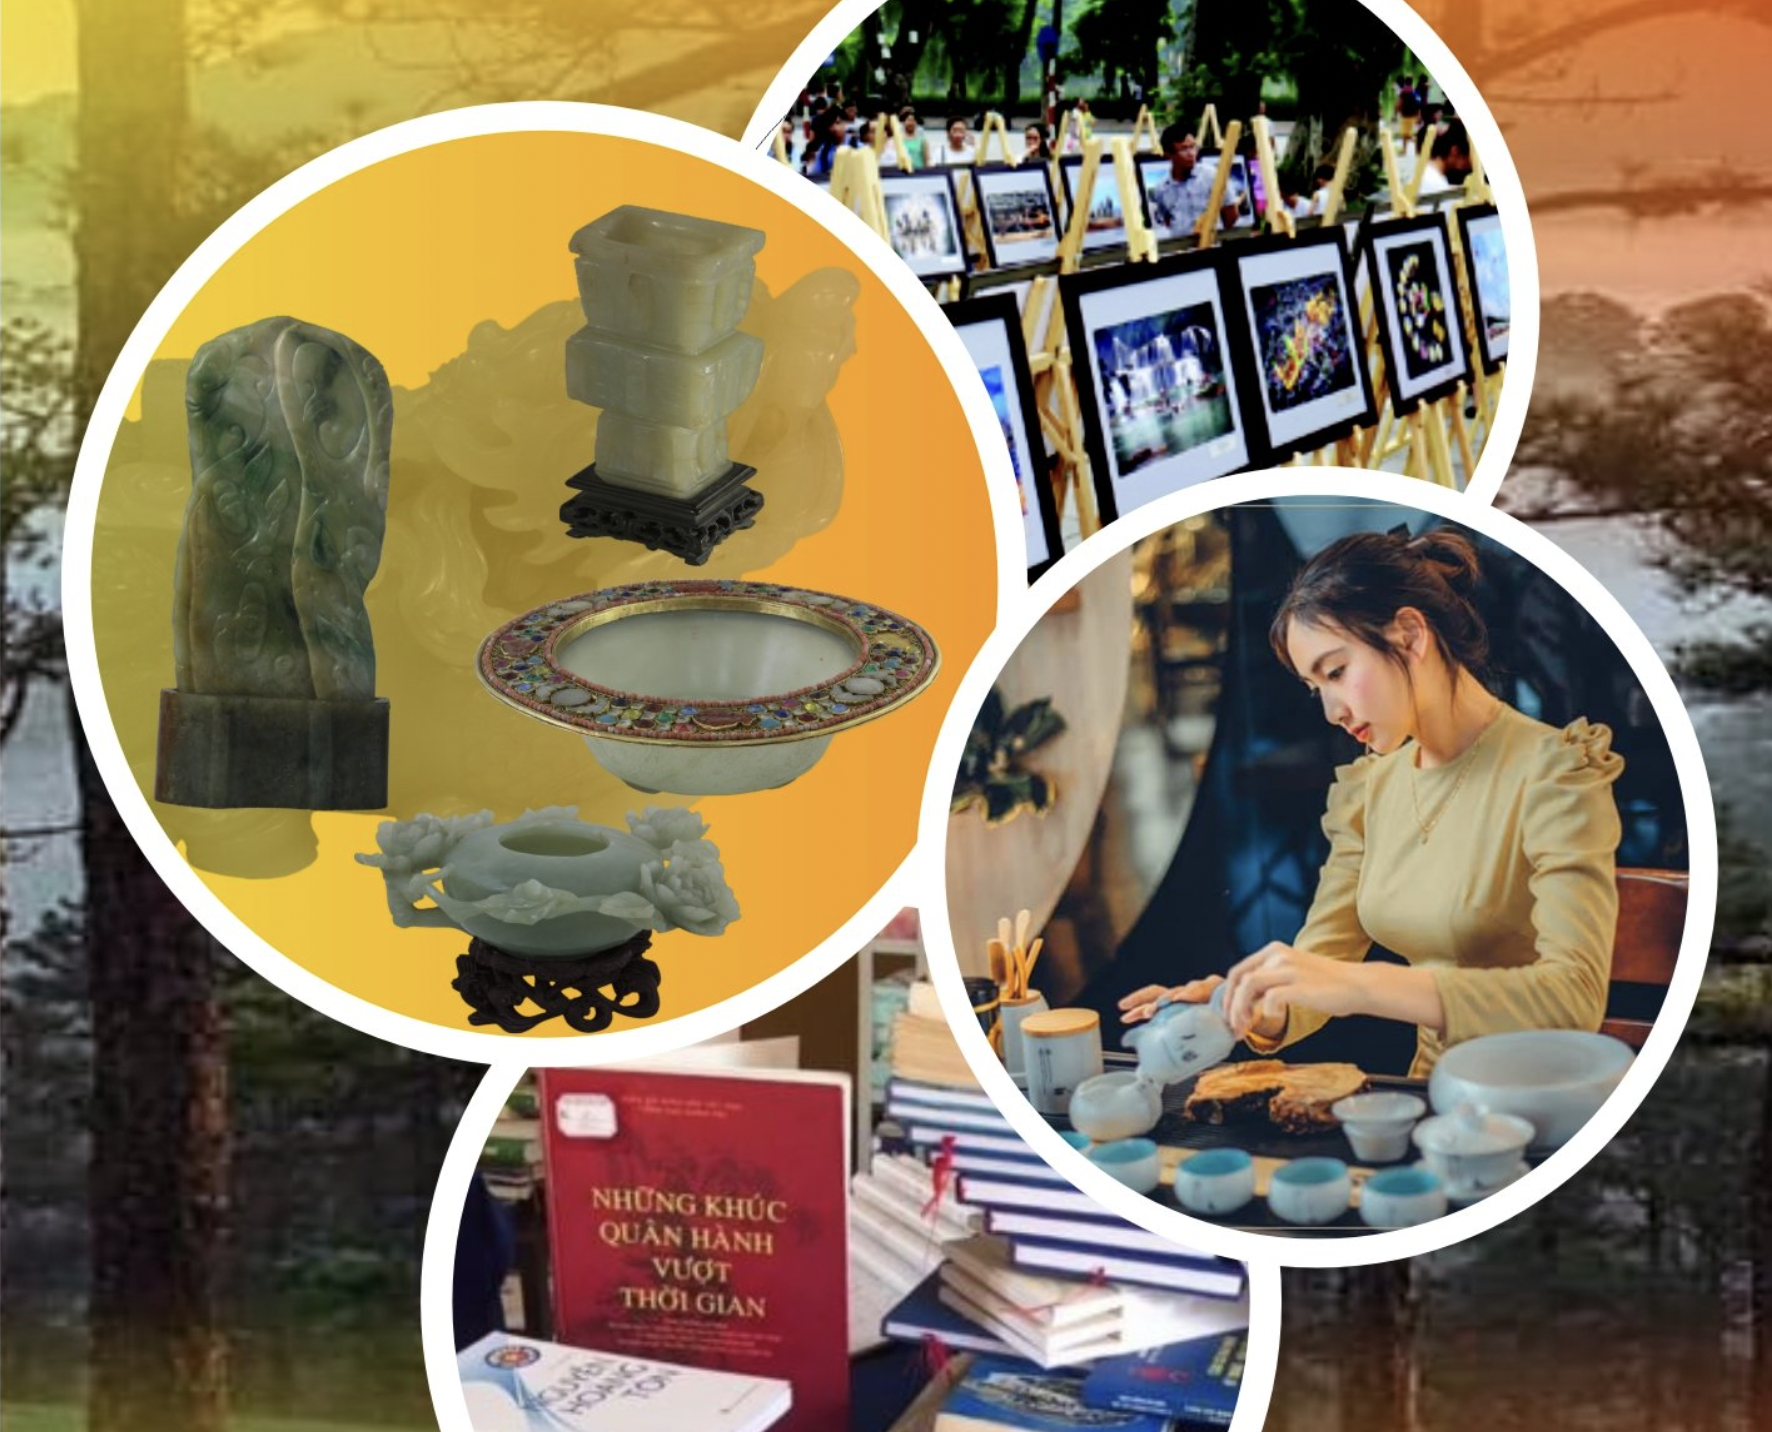 Bảo tàng Lâm Đồng - điểm đến du lịch với nhiều hoạt động hấp dẫn